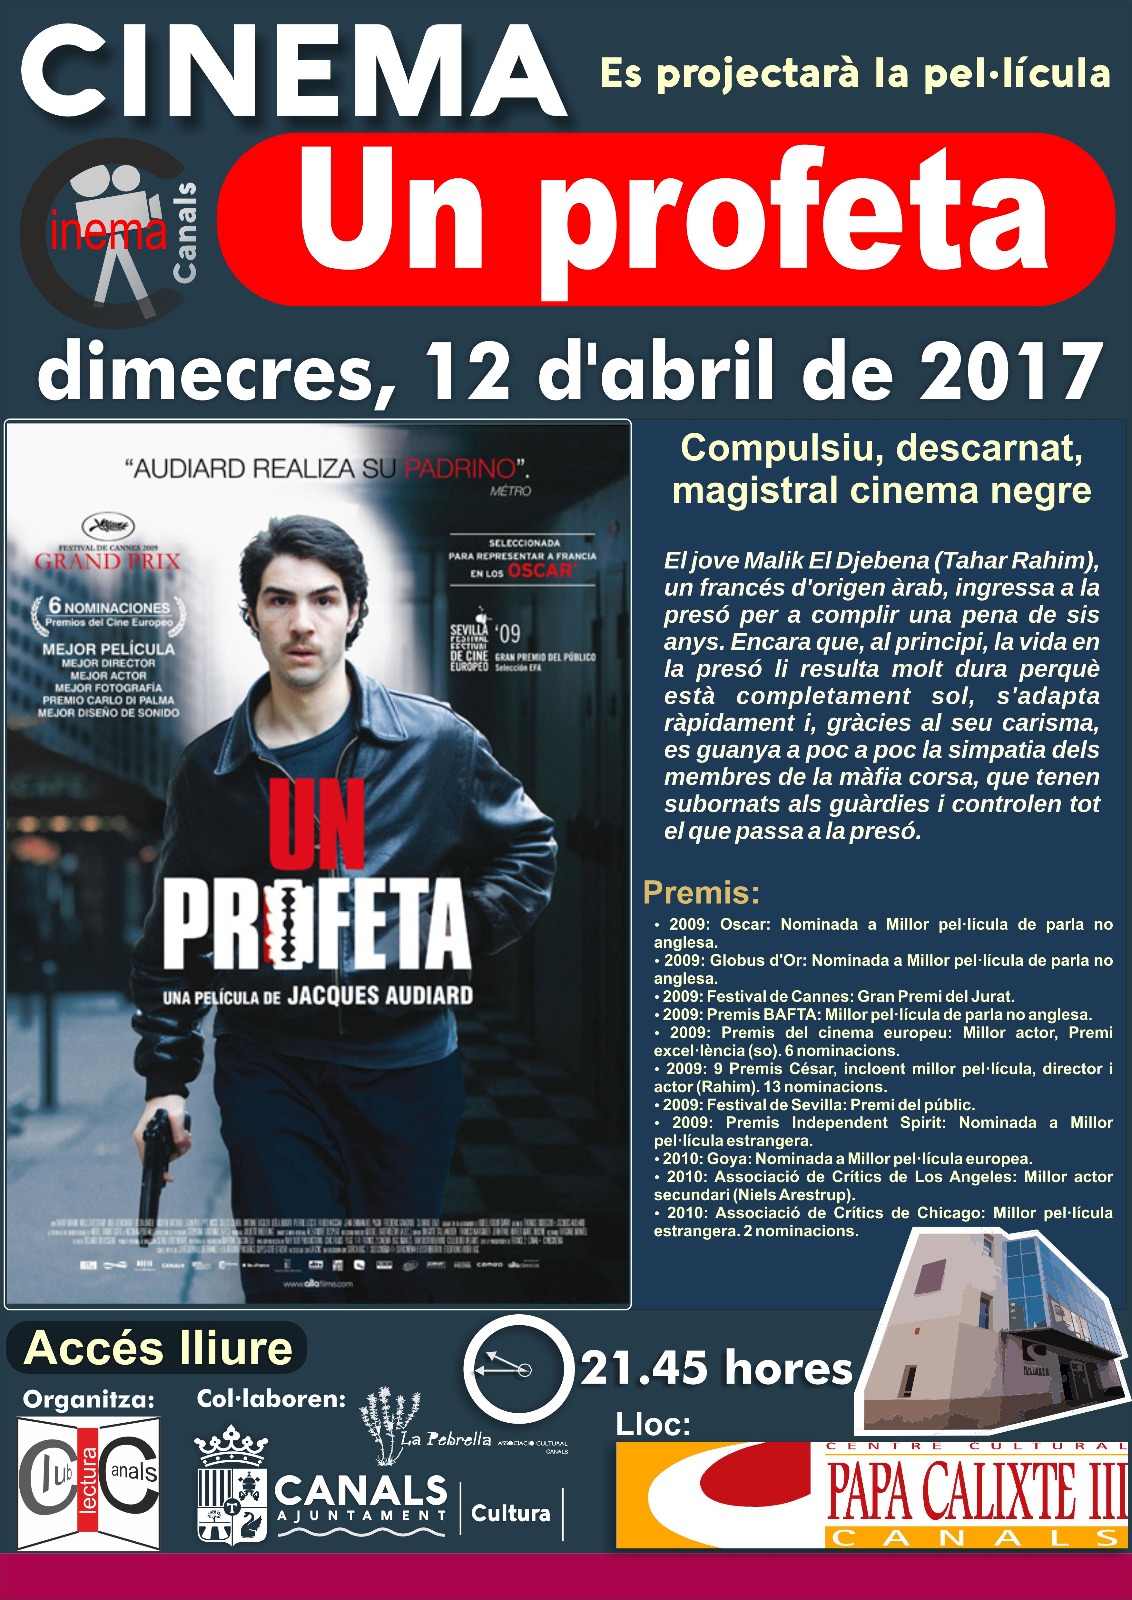 2017.04.10 Cinema Dijous. Un Profeta. Ajuntament de Canals.